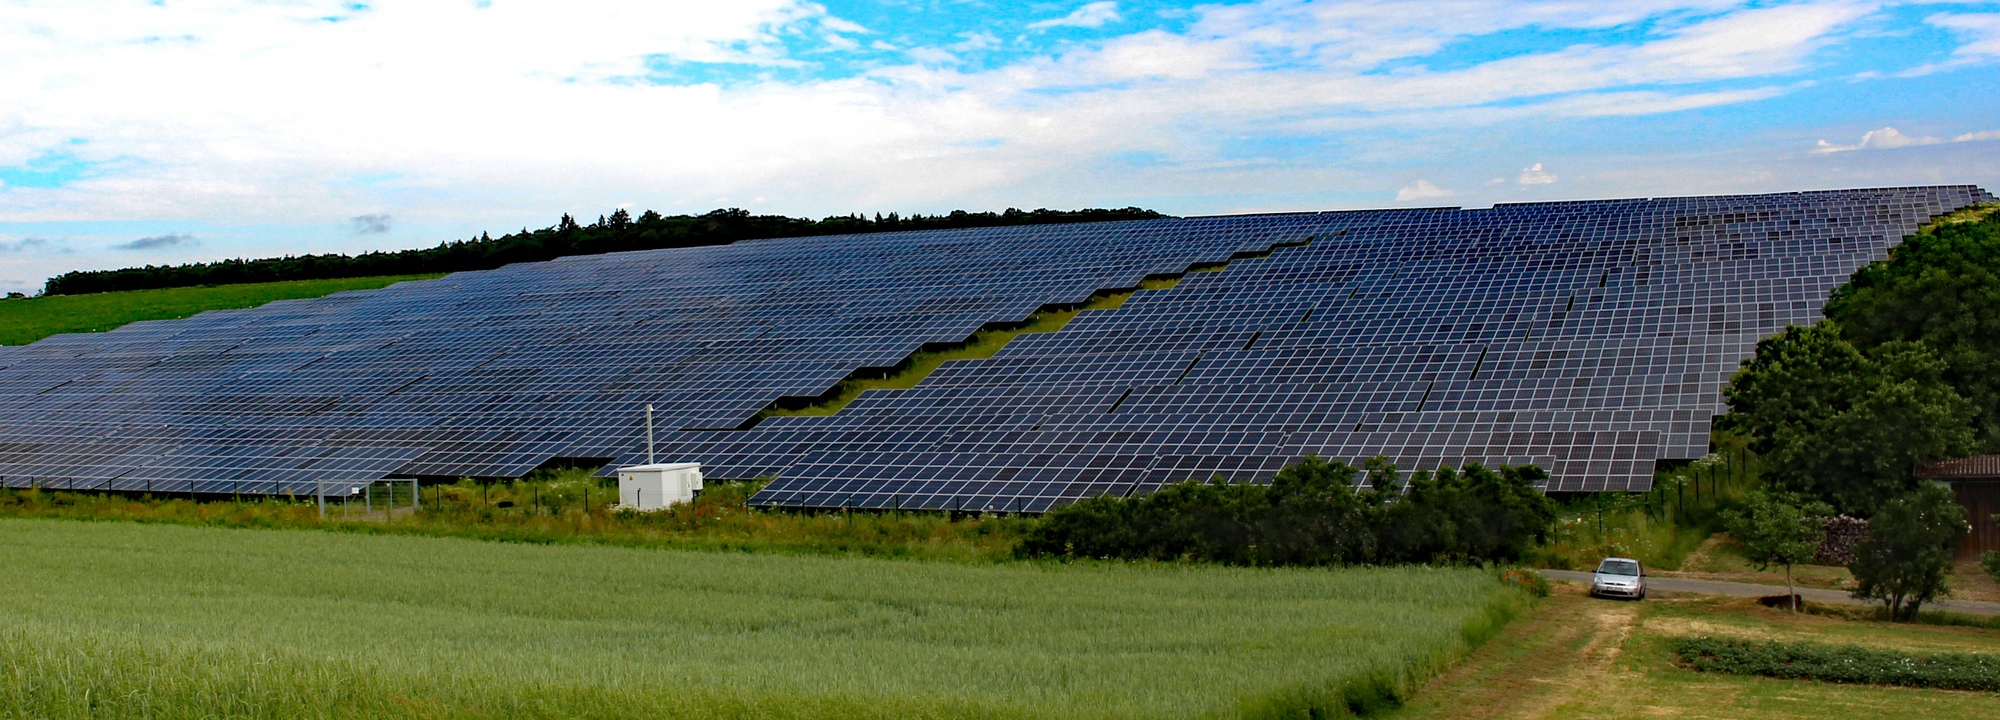 Walldürn: Riesiger Solarpark für Altheim geplant - Buchen - RNZ